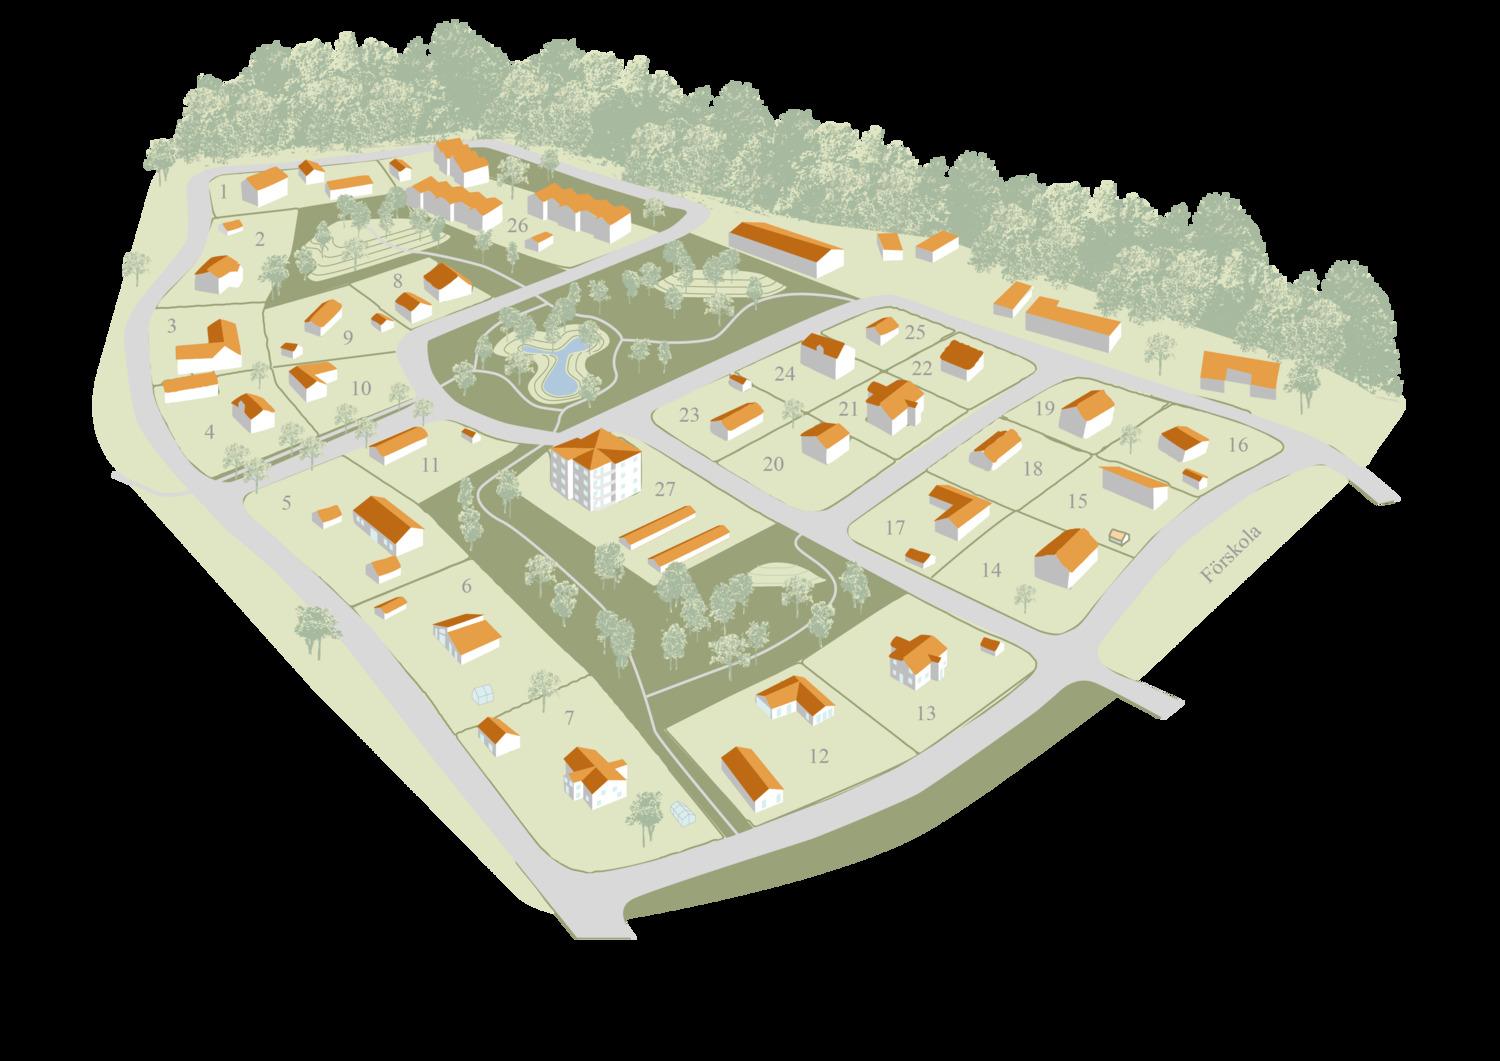 Illustrerad karta över ett planerat bostadsområde med utmärkta tomter och omgivande grönska.